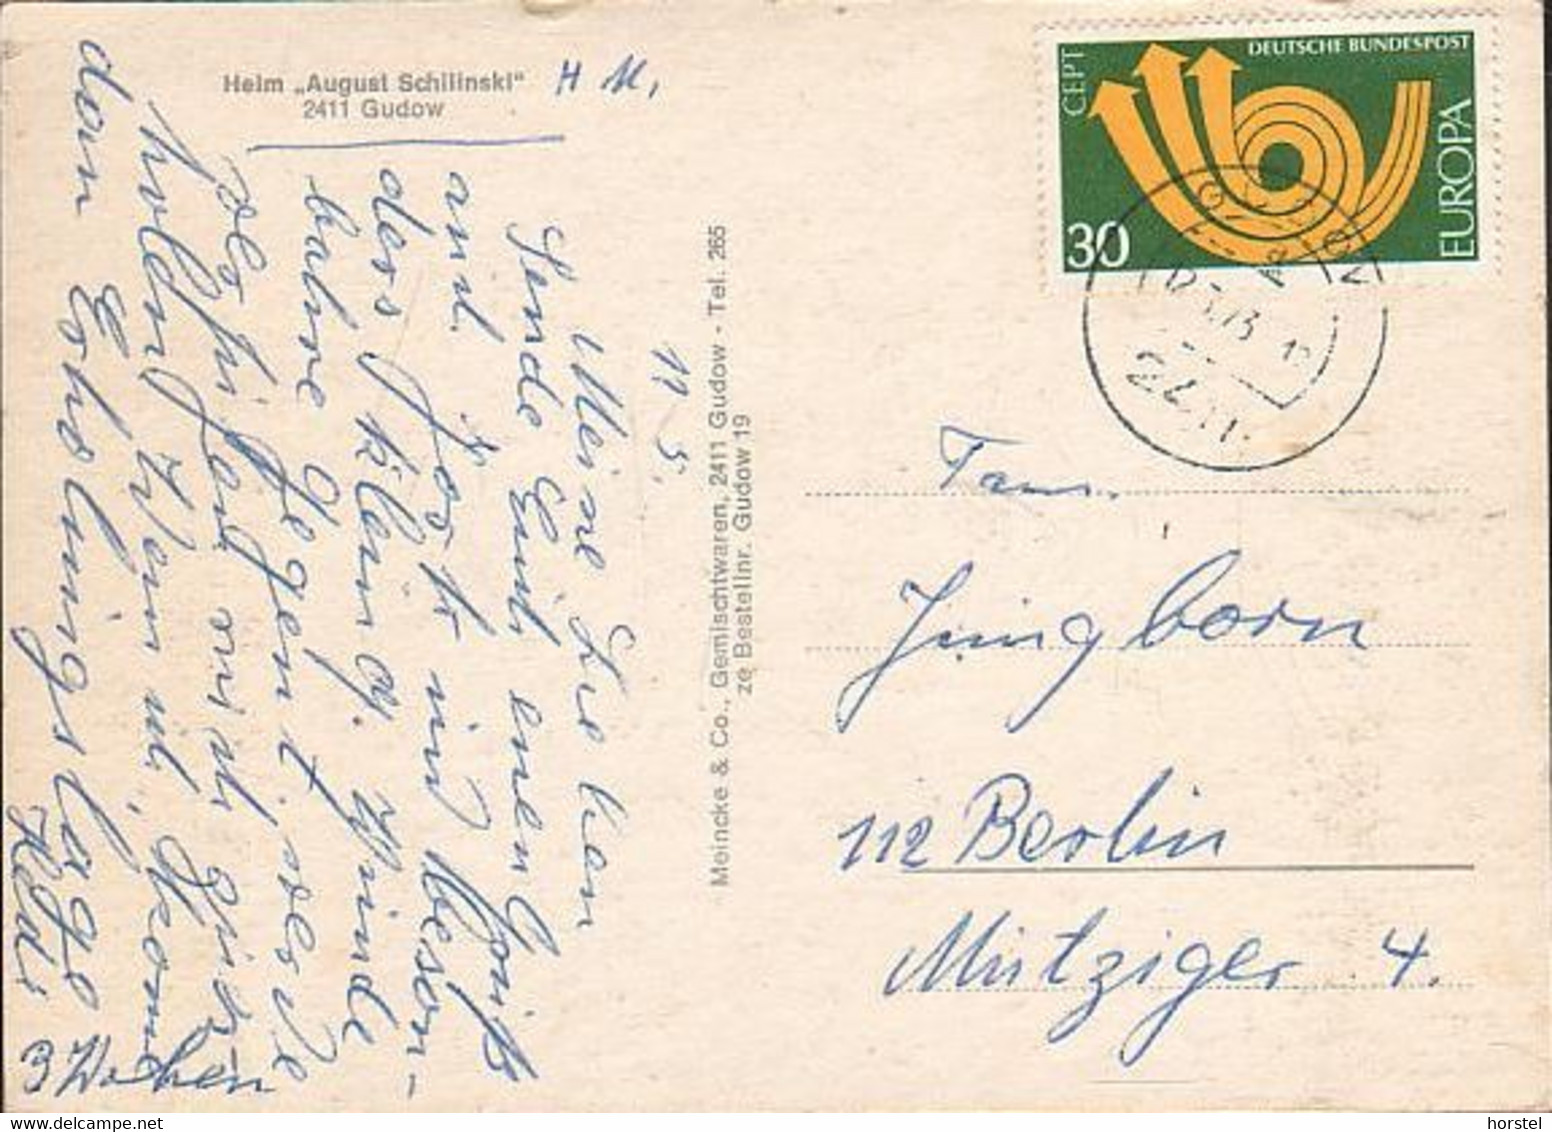 D-23899 Gudow - Heim "August Schilinski" - Nice Stamp "Cept" - Lauenburg